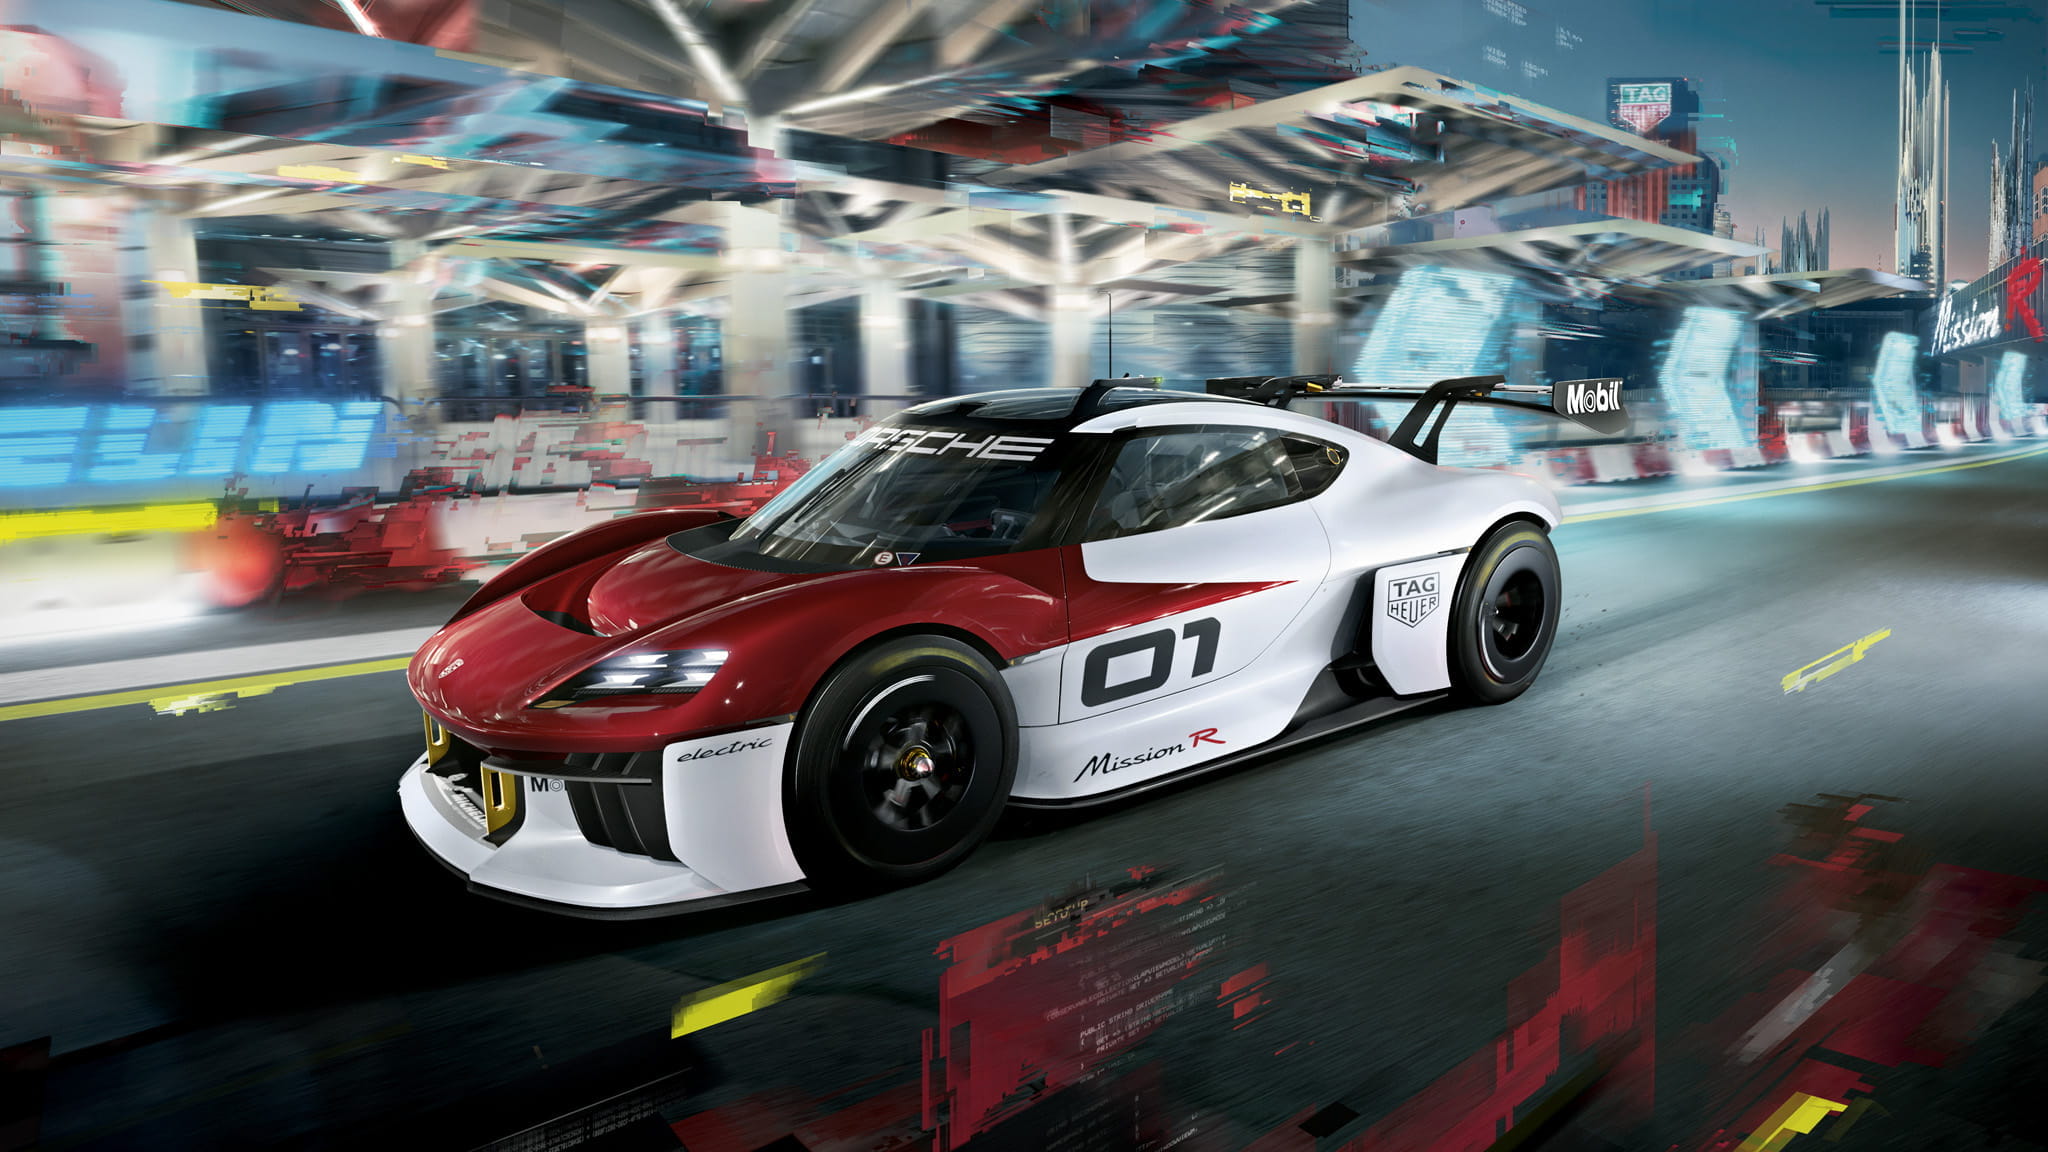 Porsche Mission R electric race car concept unveiled - Drive